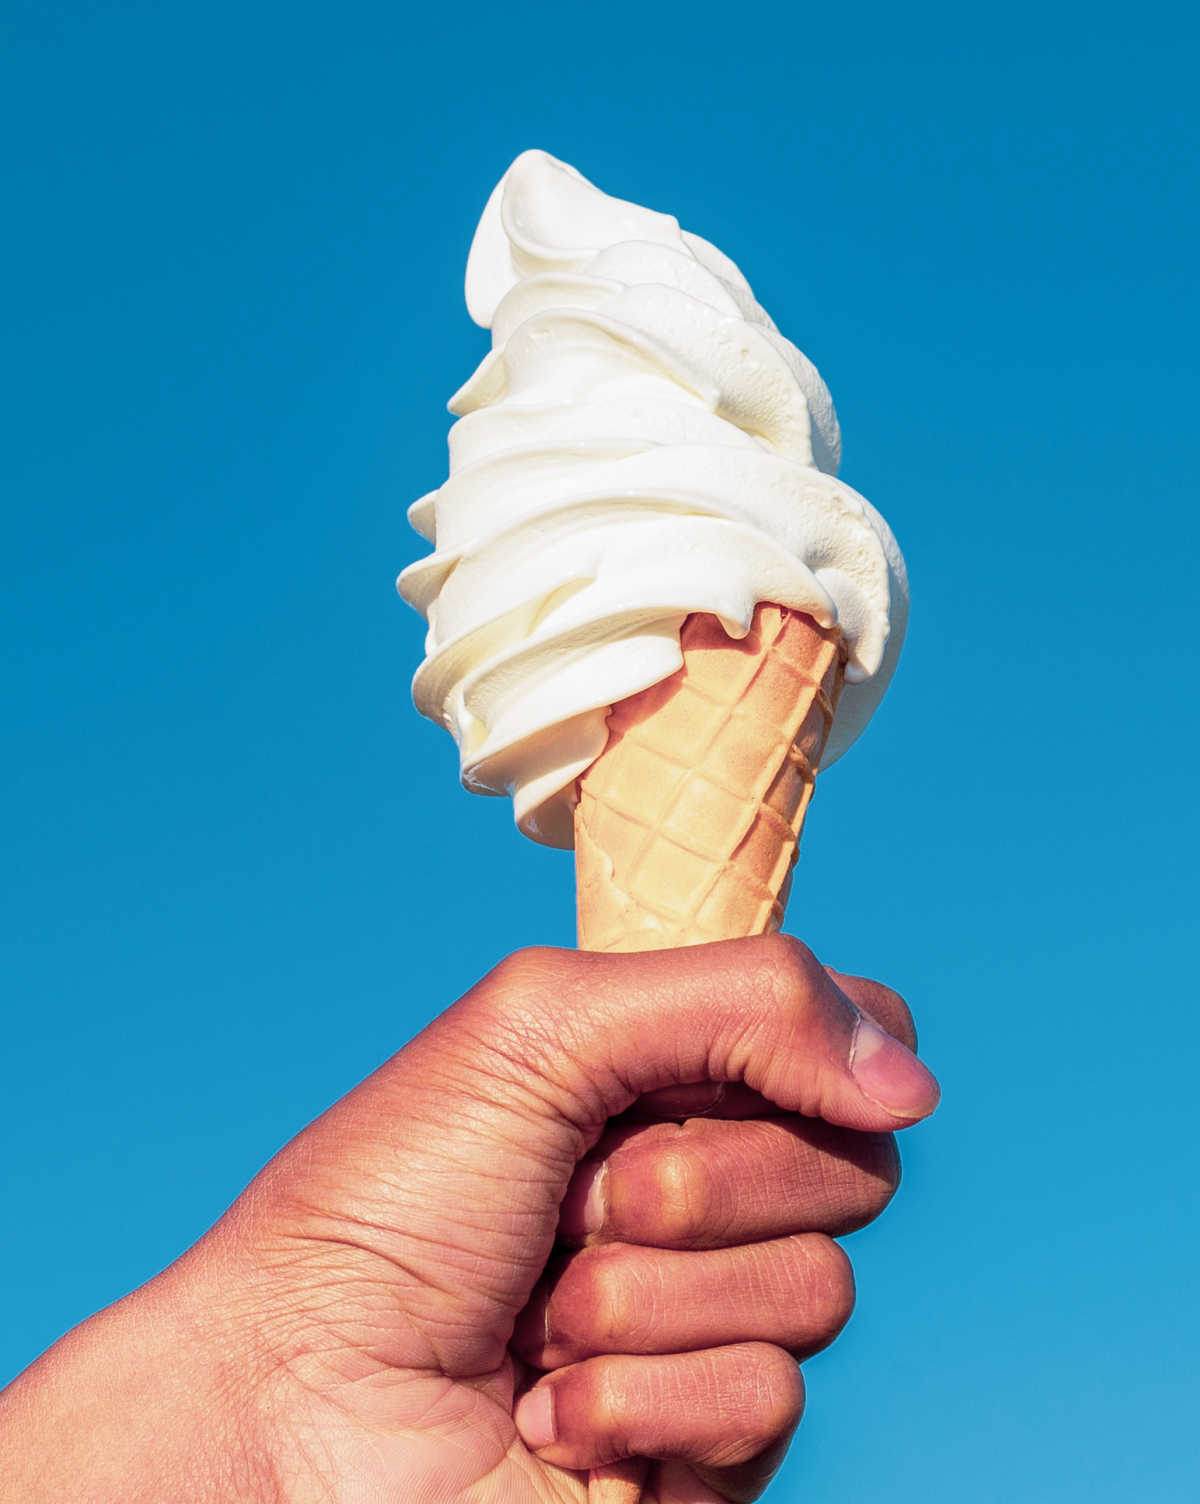 Hand holding a vanilla ice cream cone.